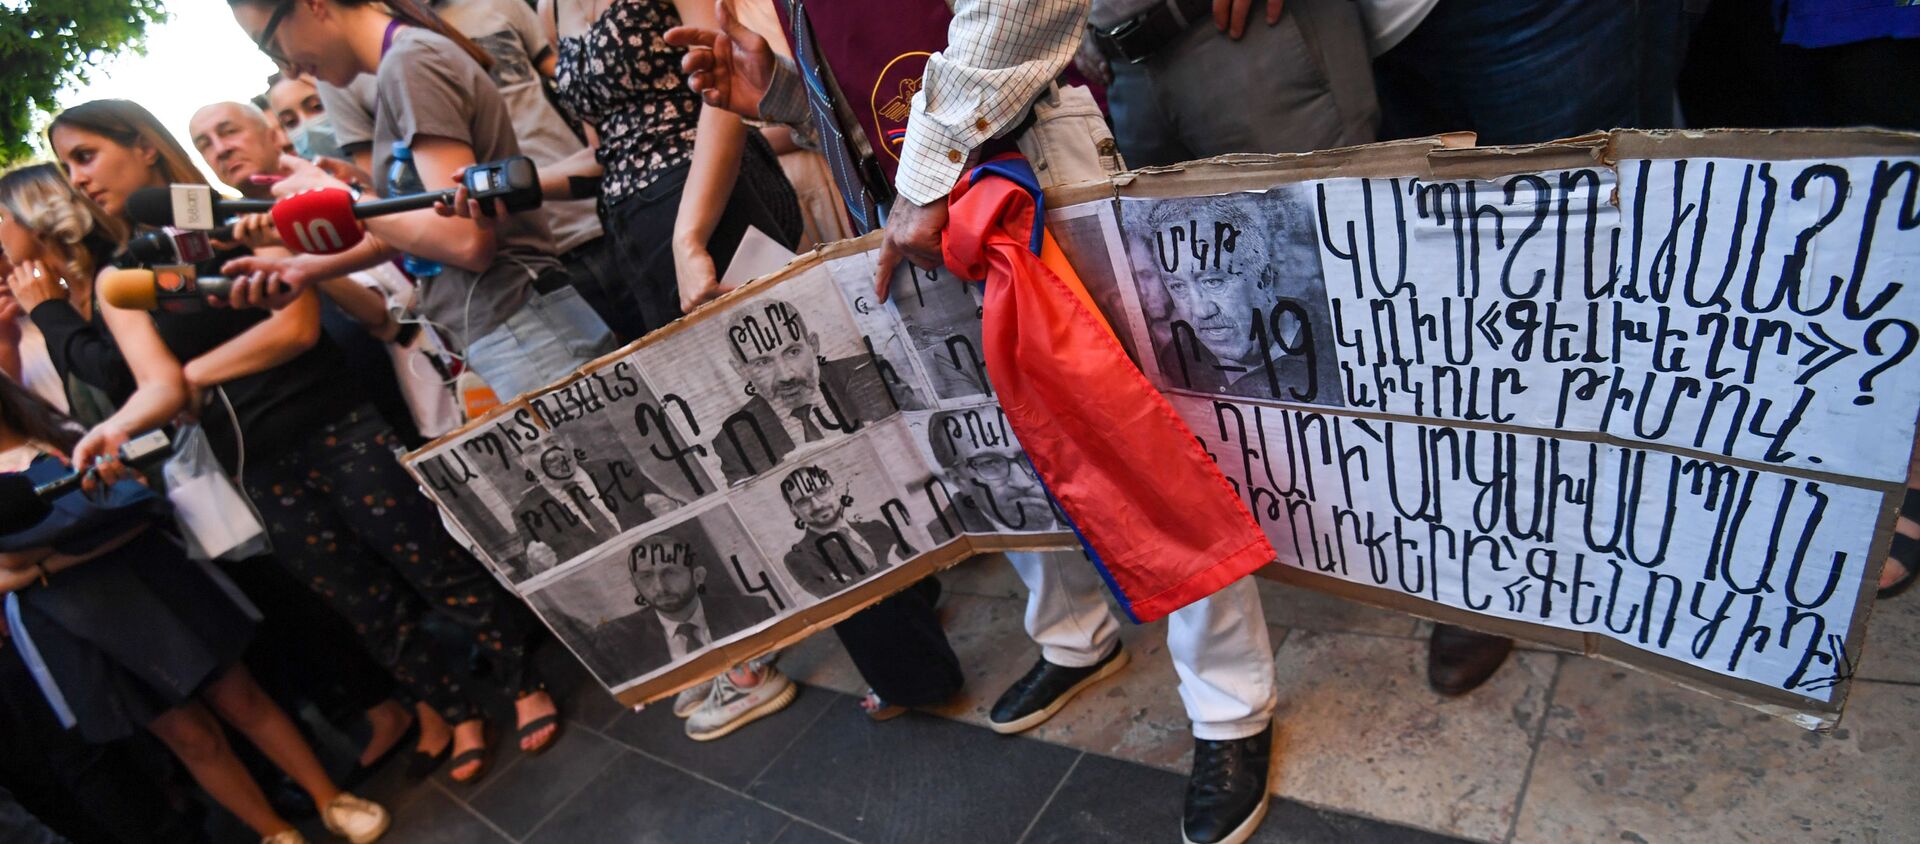 Участники акции протеста с требованием опубликовать договор с Азербайджаном с баннерами и плакатами - Sputnik Արմենիա, 1920, 20.05.2021